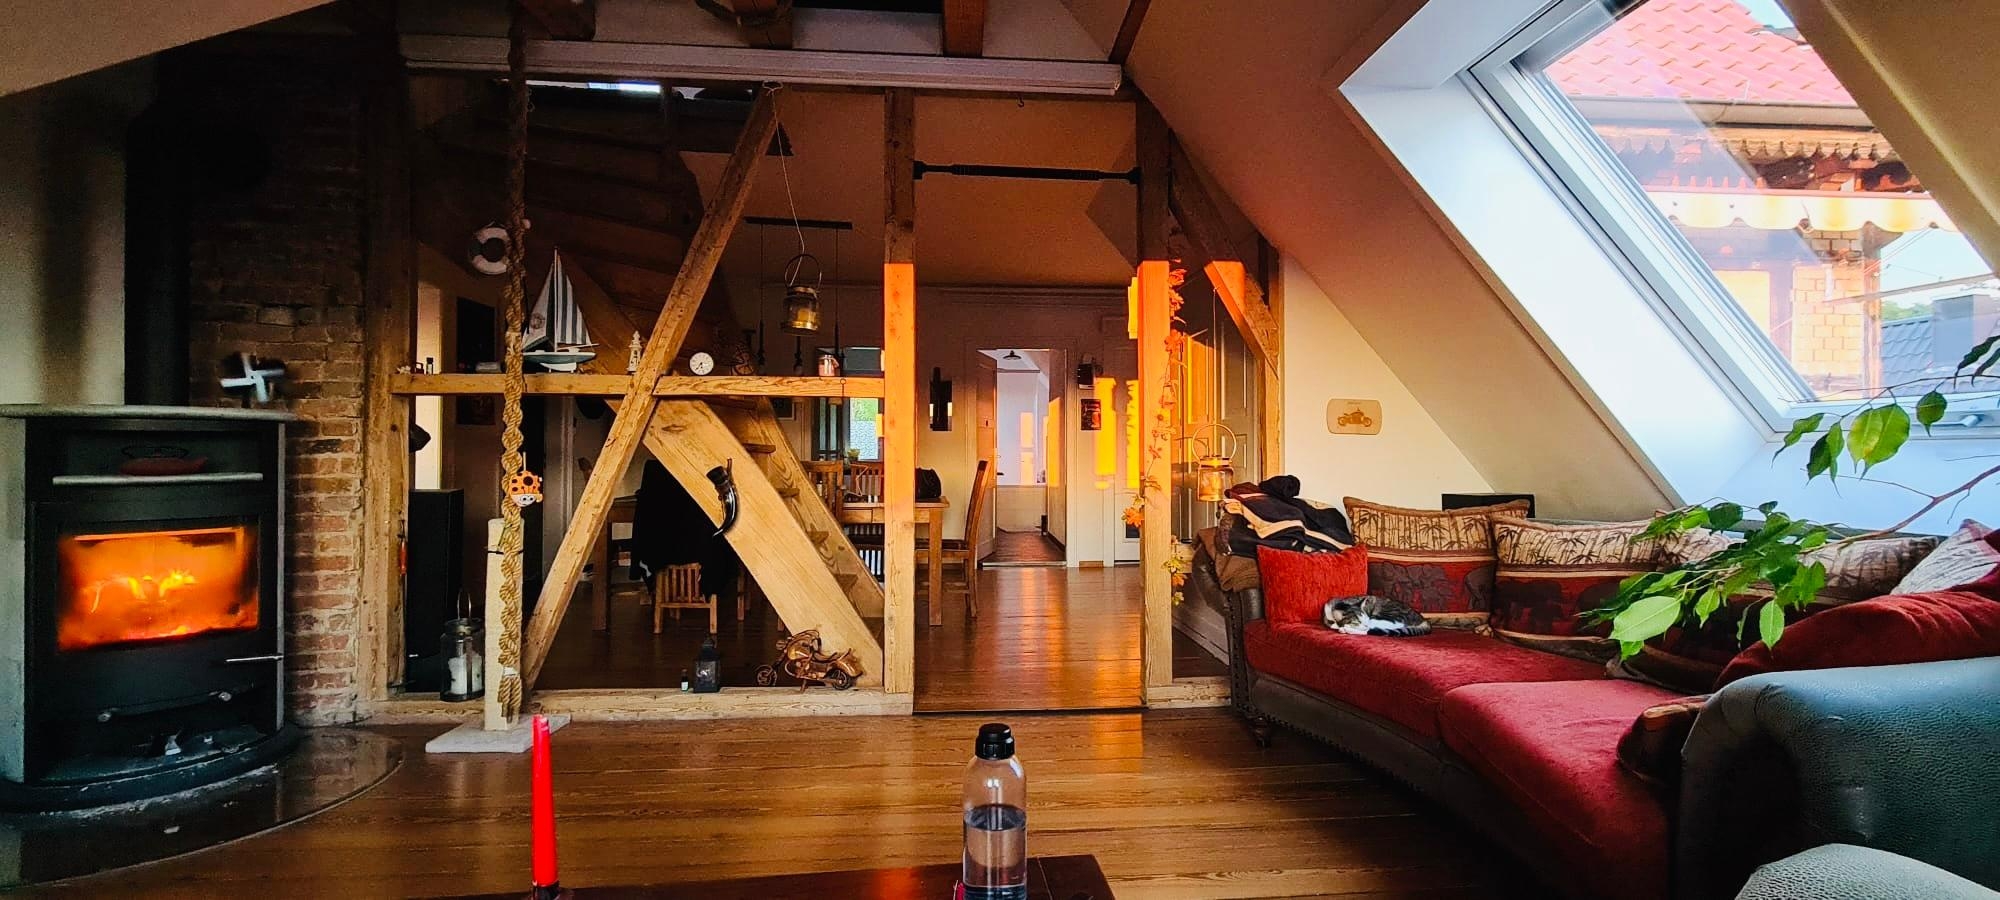 #wohnzimmerumstyling
Gemütliche Kaminabende in alter Stuttgarter Villa am Weinberg, es fehlt etwas moderner Charme. 
